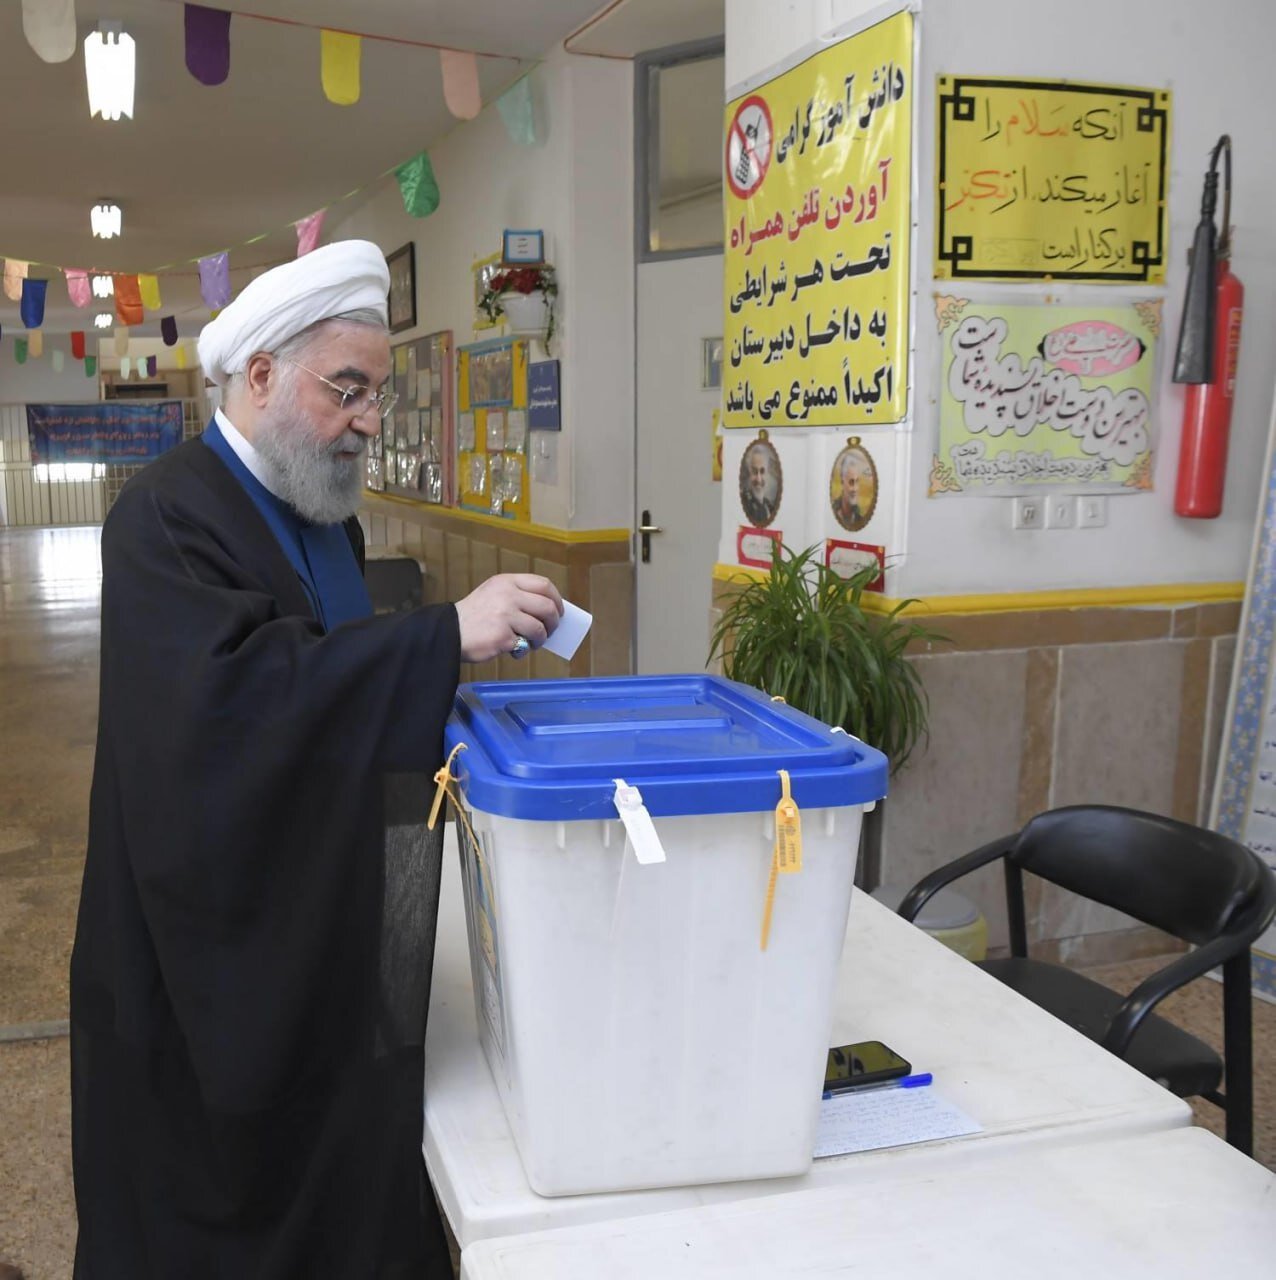 عکسی از حسن روحانی درحال نوشتن اسم پزشکیان در تعرفه رأی 6